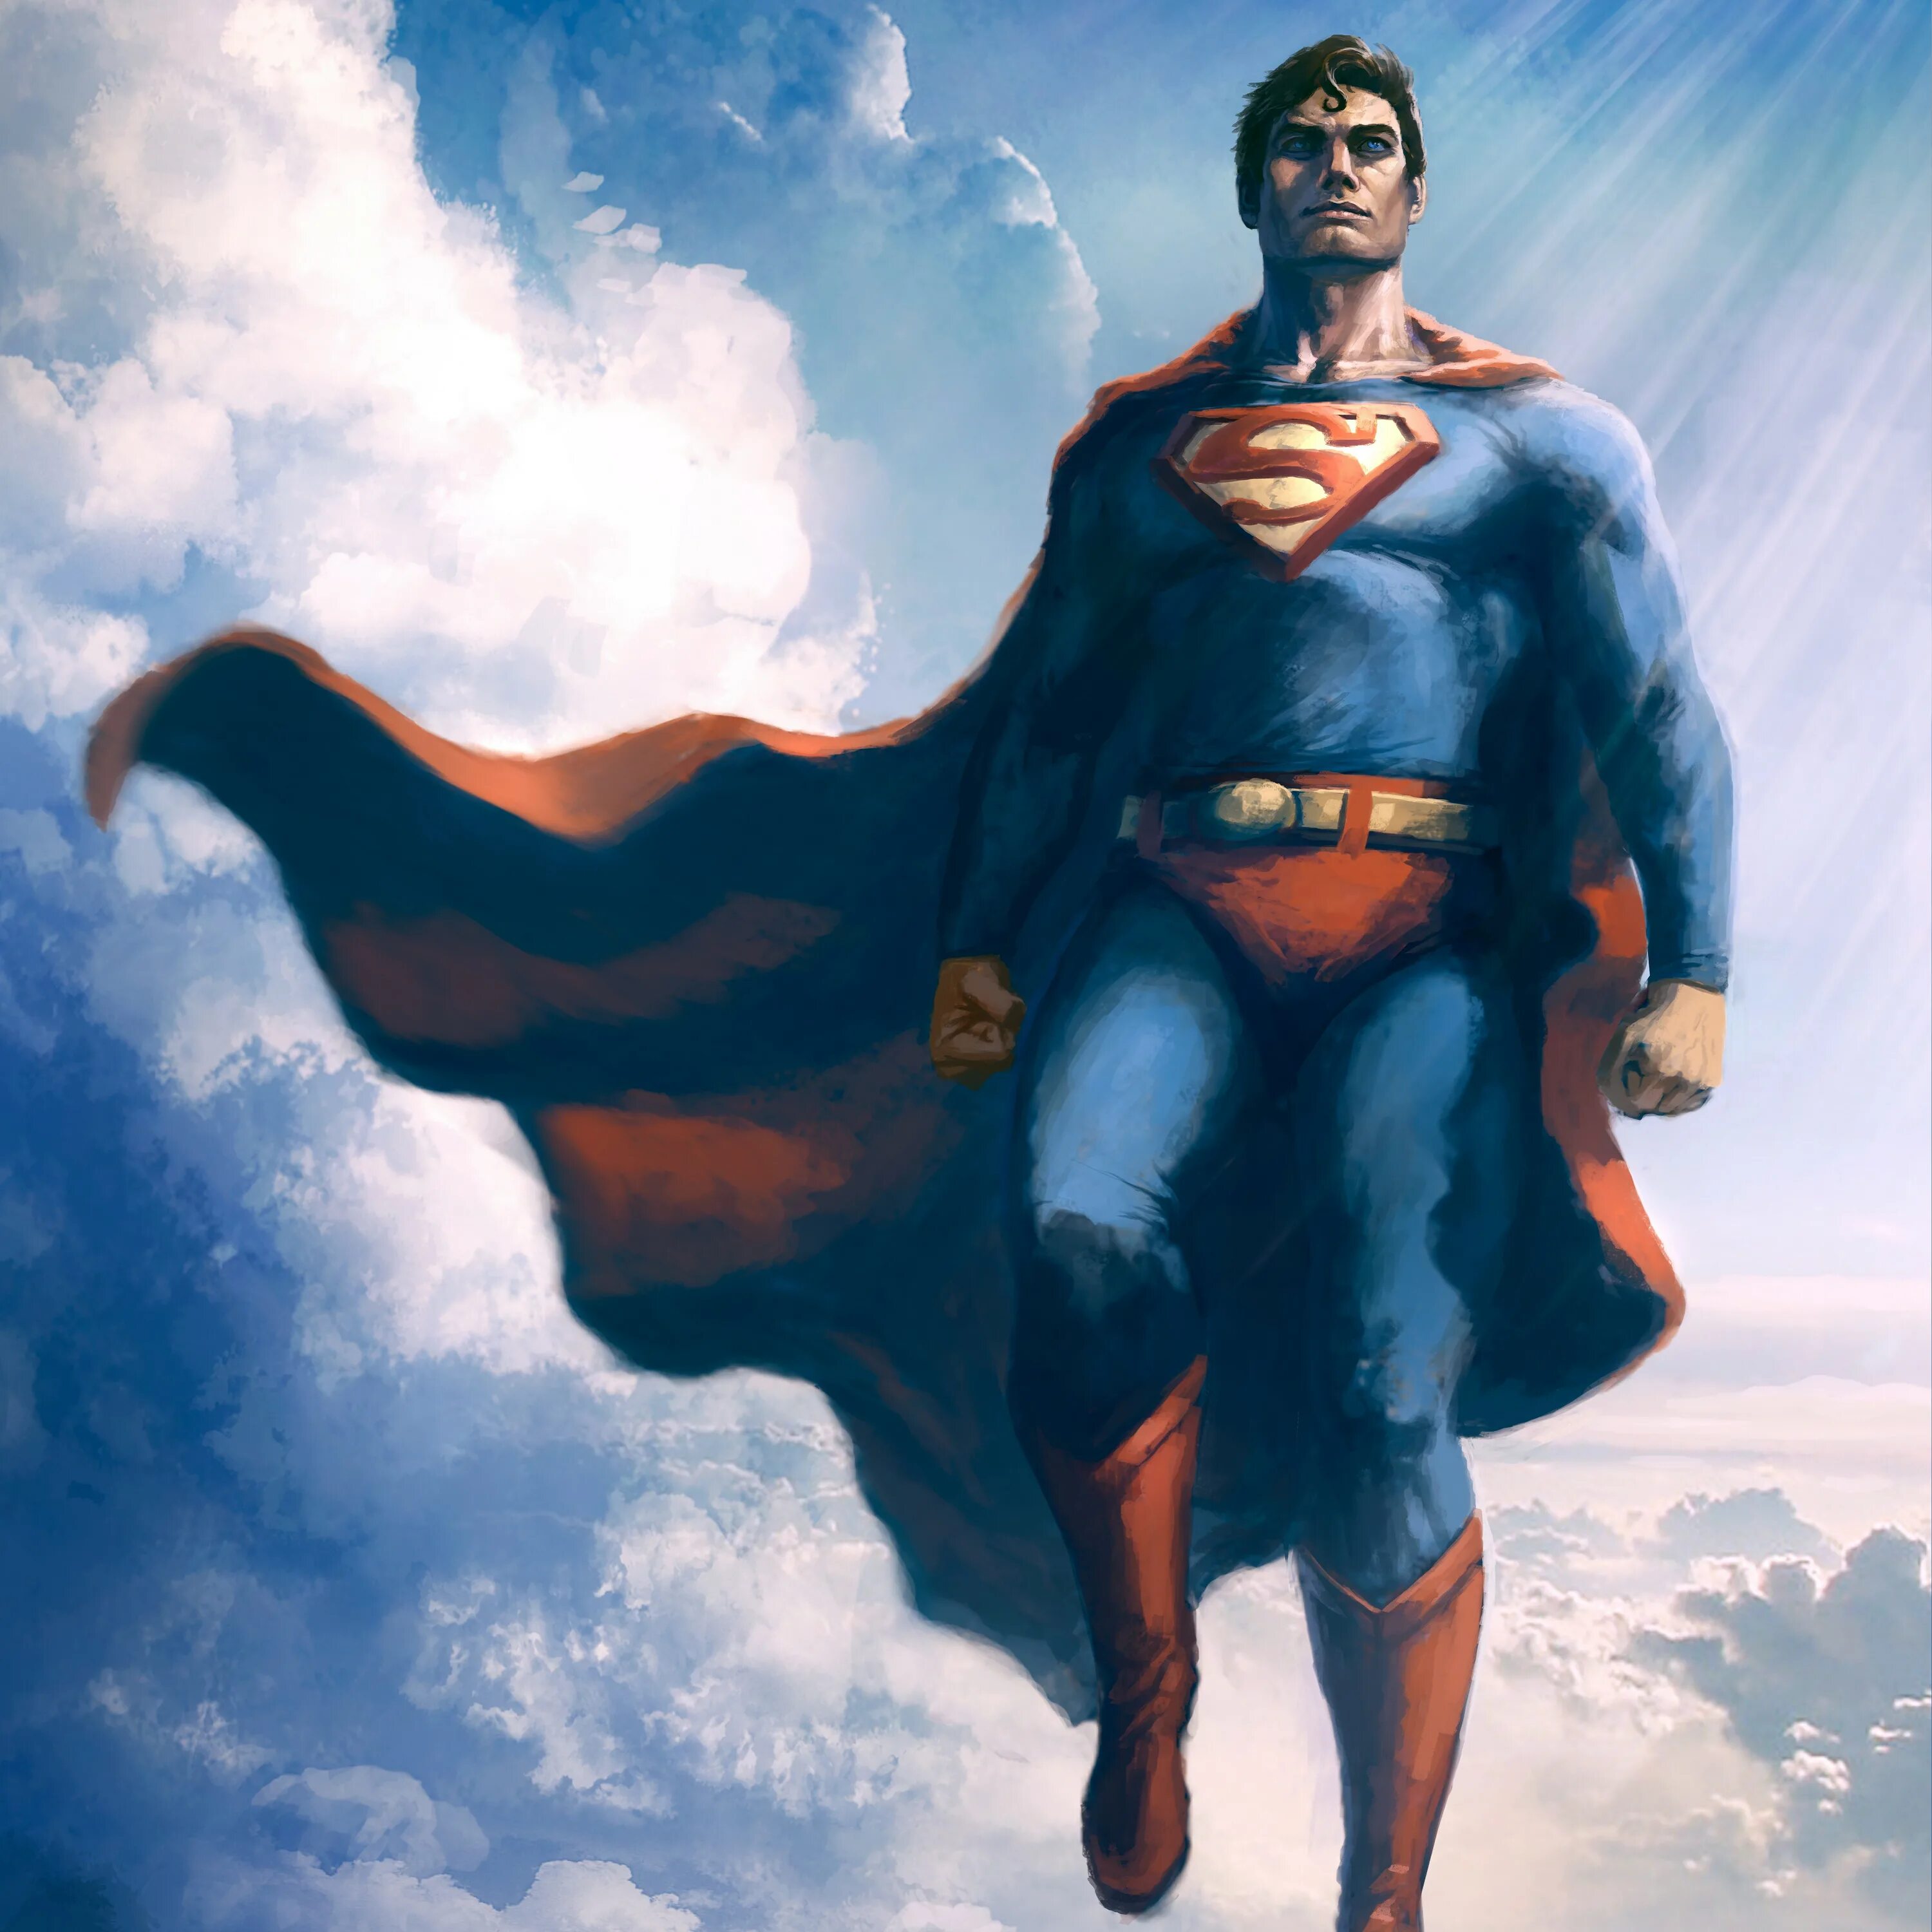 Картинки супер героев. Кларк Кент Супермен. Супермен Макс Флейшер. Брюс Уэйн (Бэтмен), Кларк Кент (Супермен). Супермен 60х.